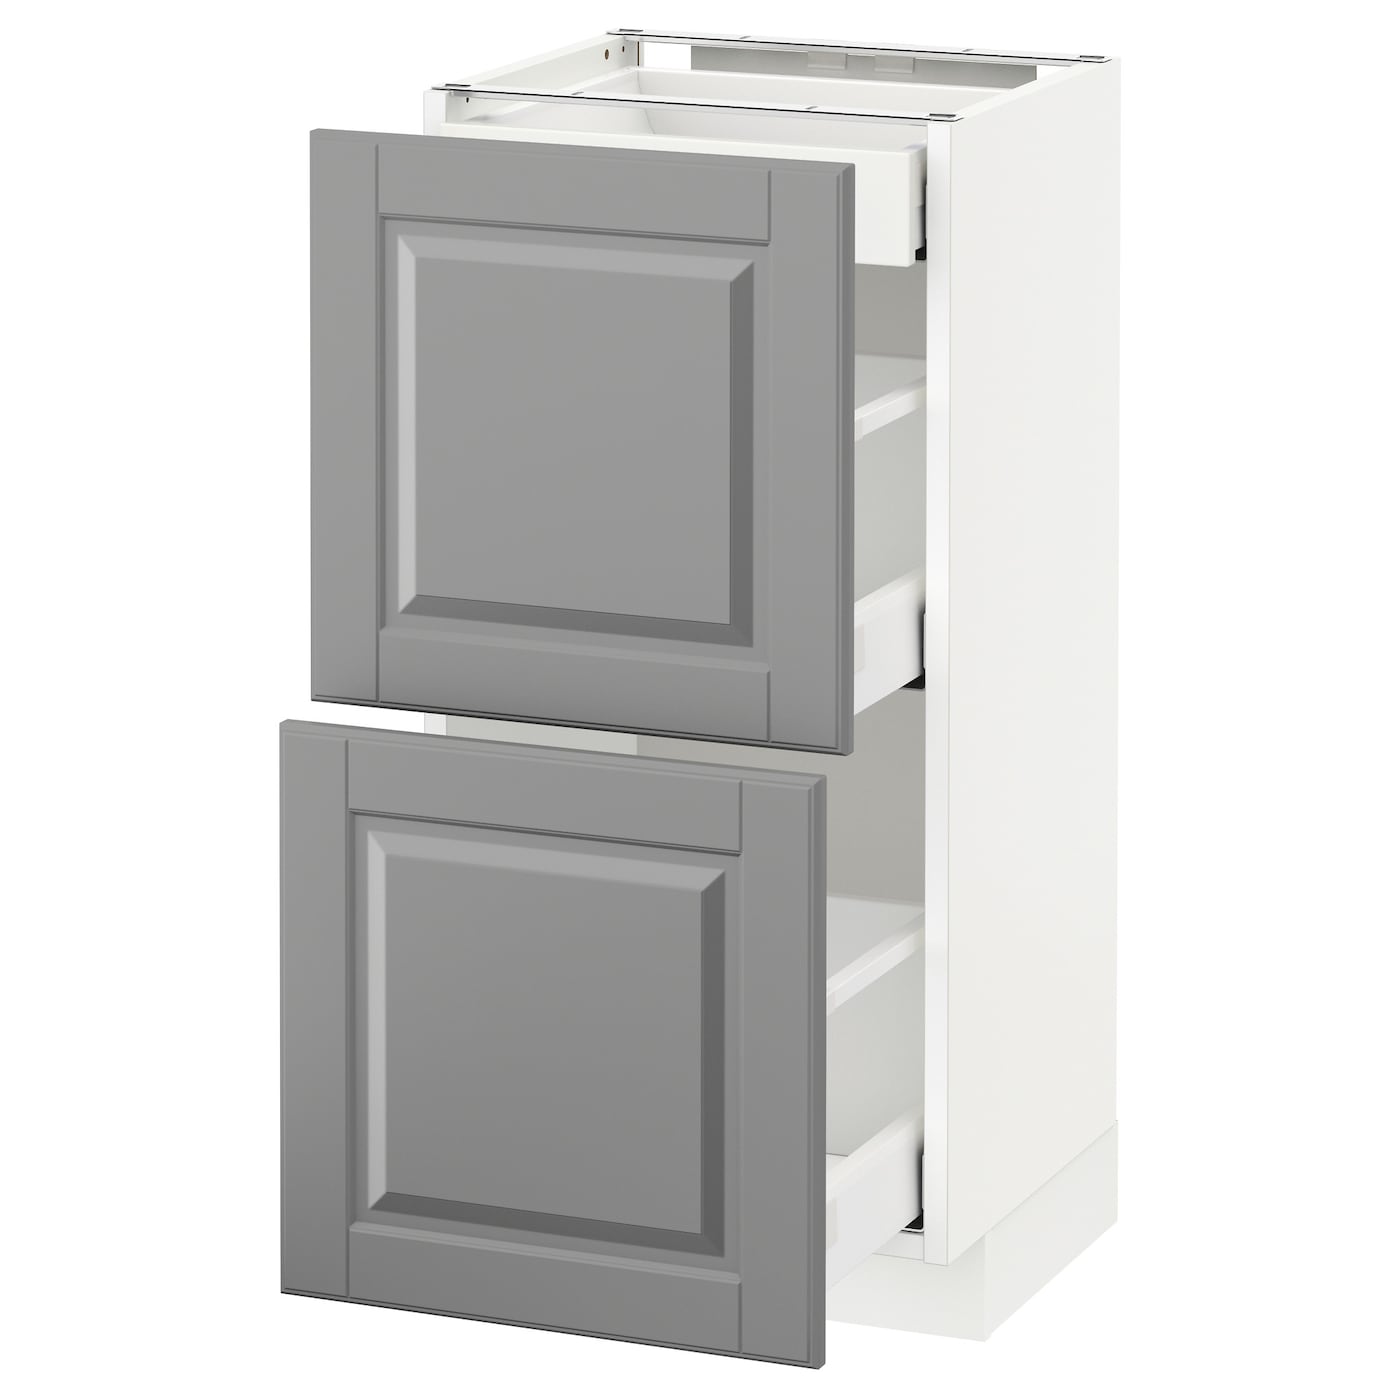 Напольный кухонный шкаф  - IKEA METOD MAXIMERA, 88x39,5x40см, белый/серый, МЕТОД МАКСИМЕРА ИКЕА